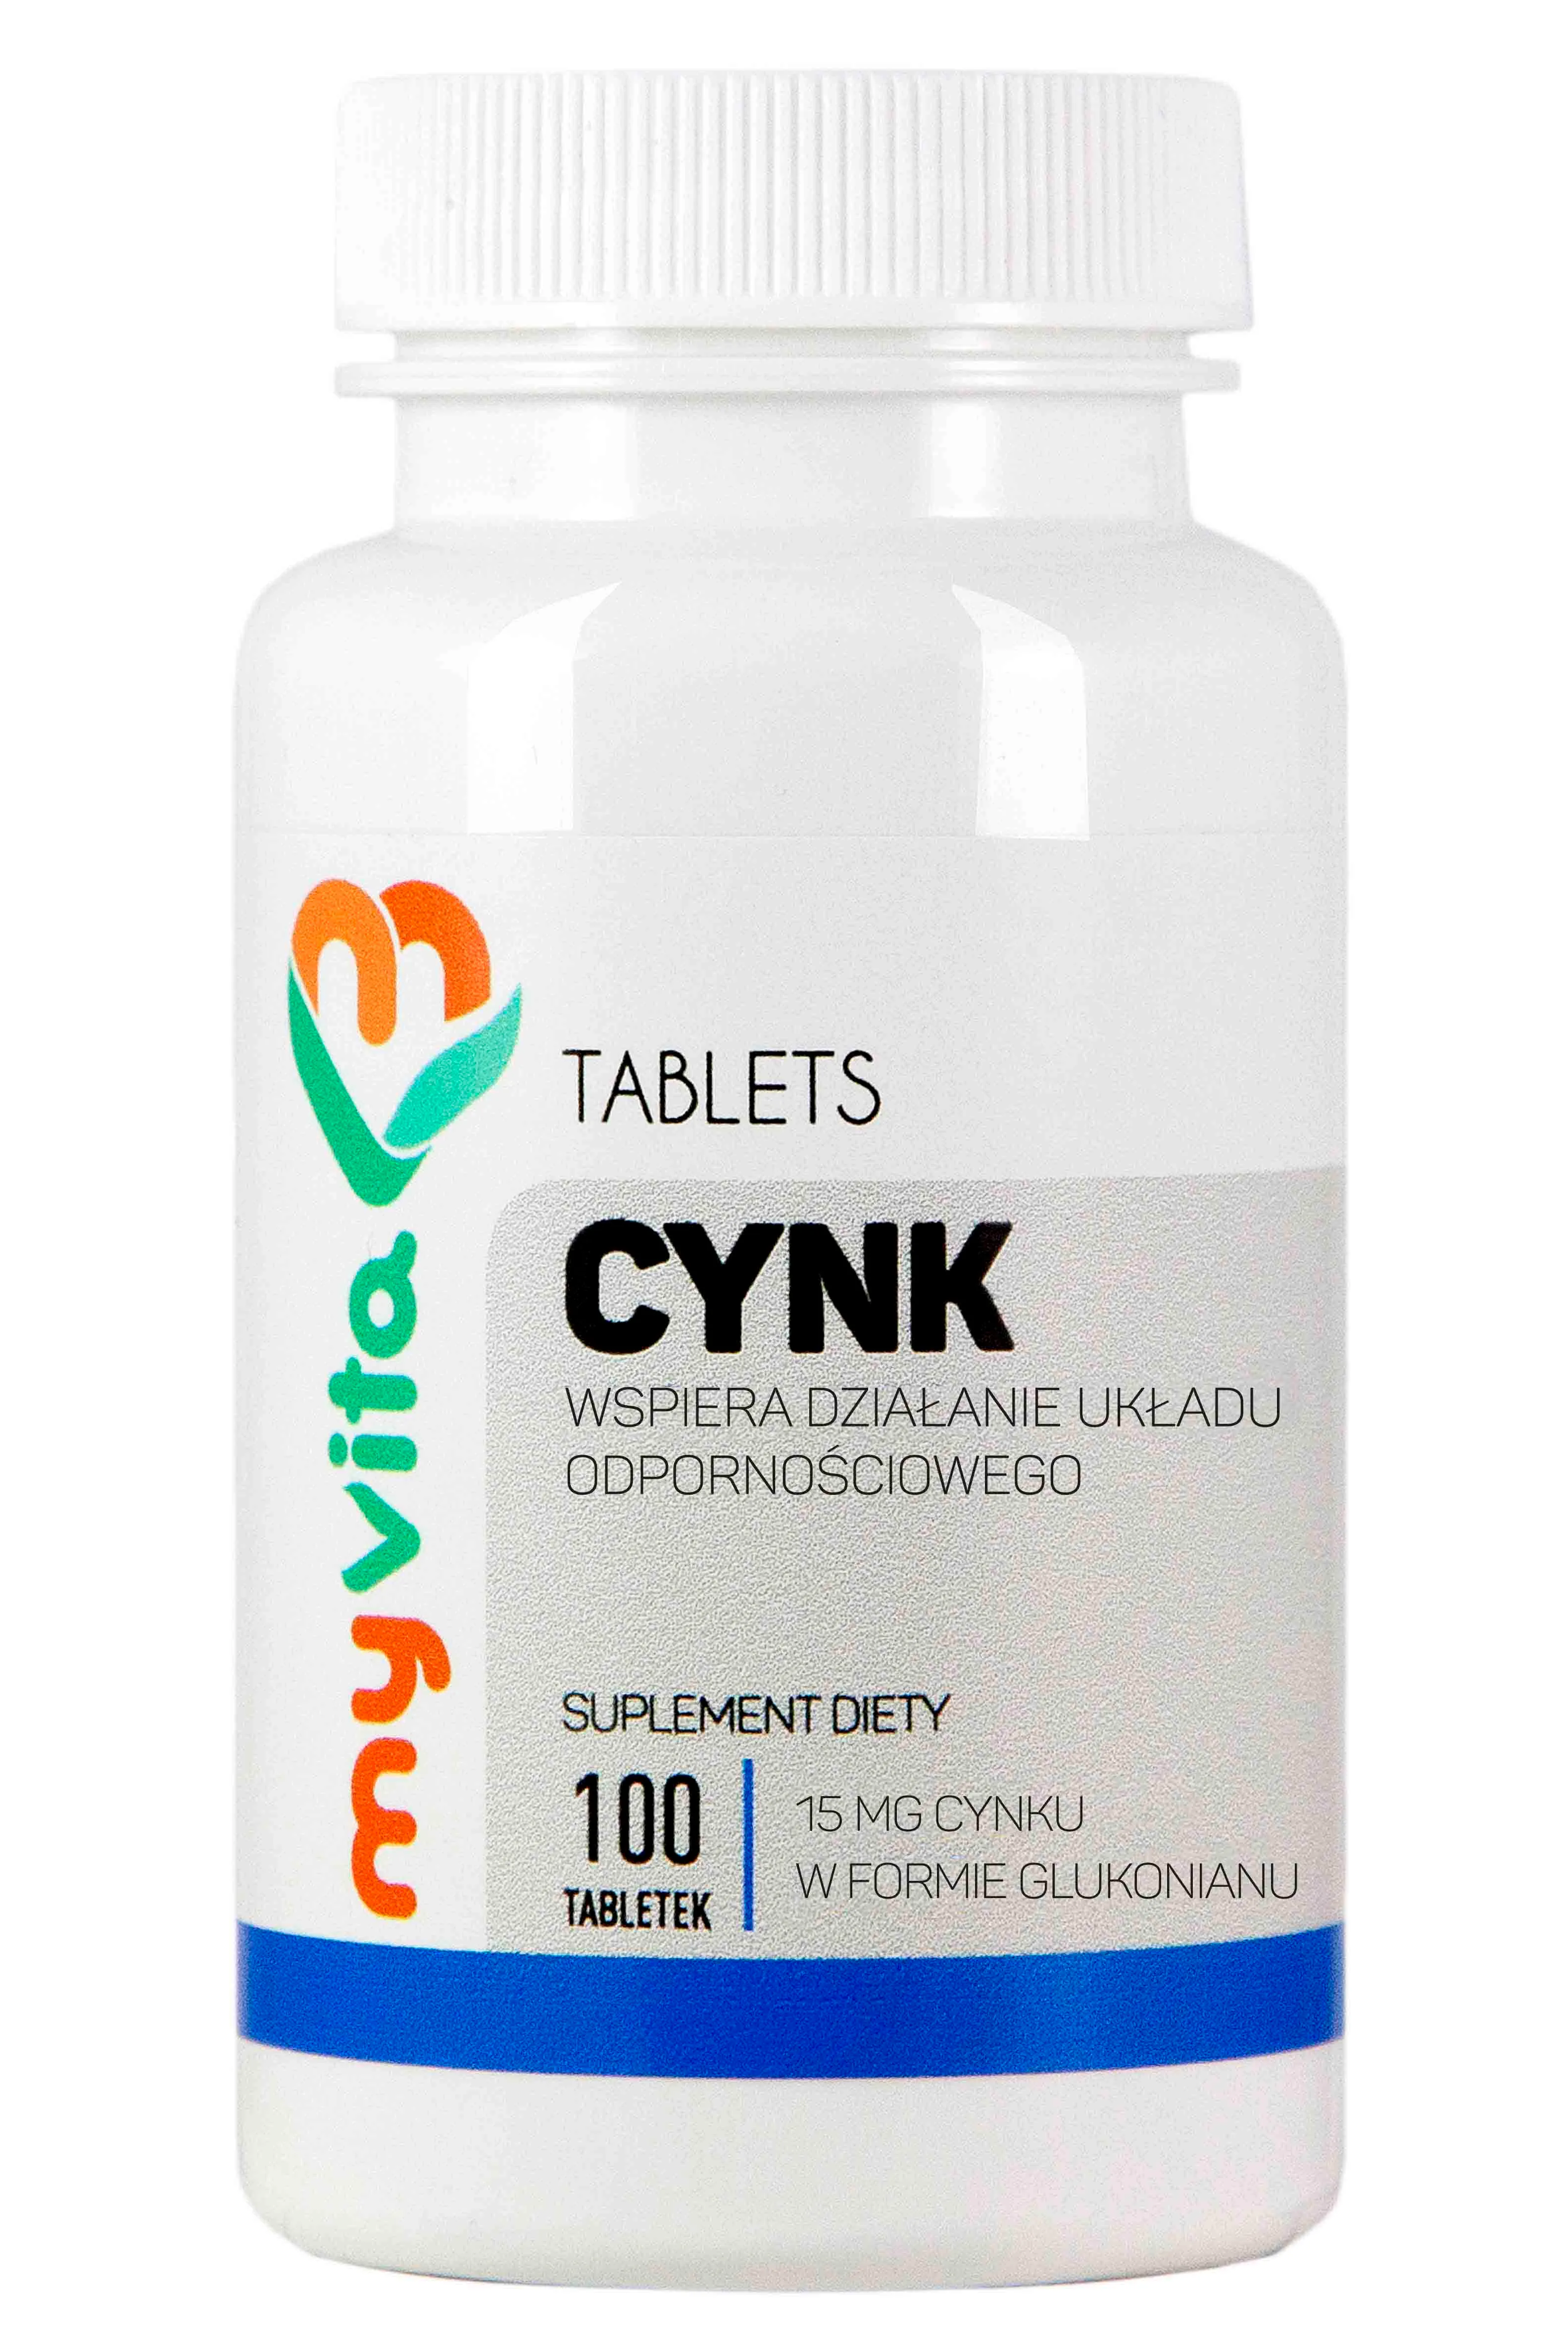 MyVita, Cynk 15mg, suplement diety, 100 tabletek